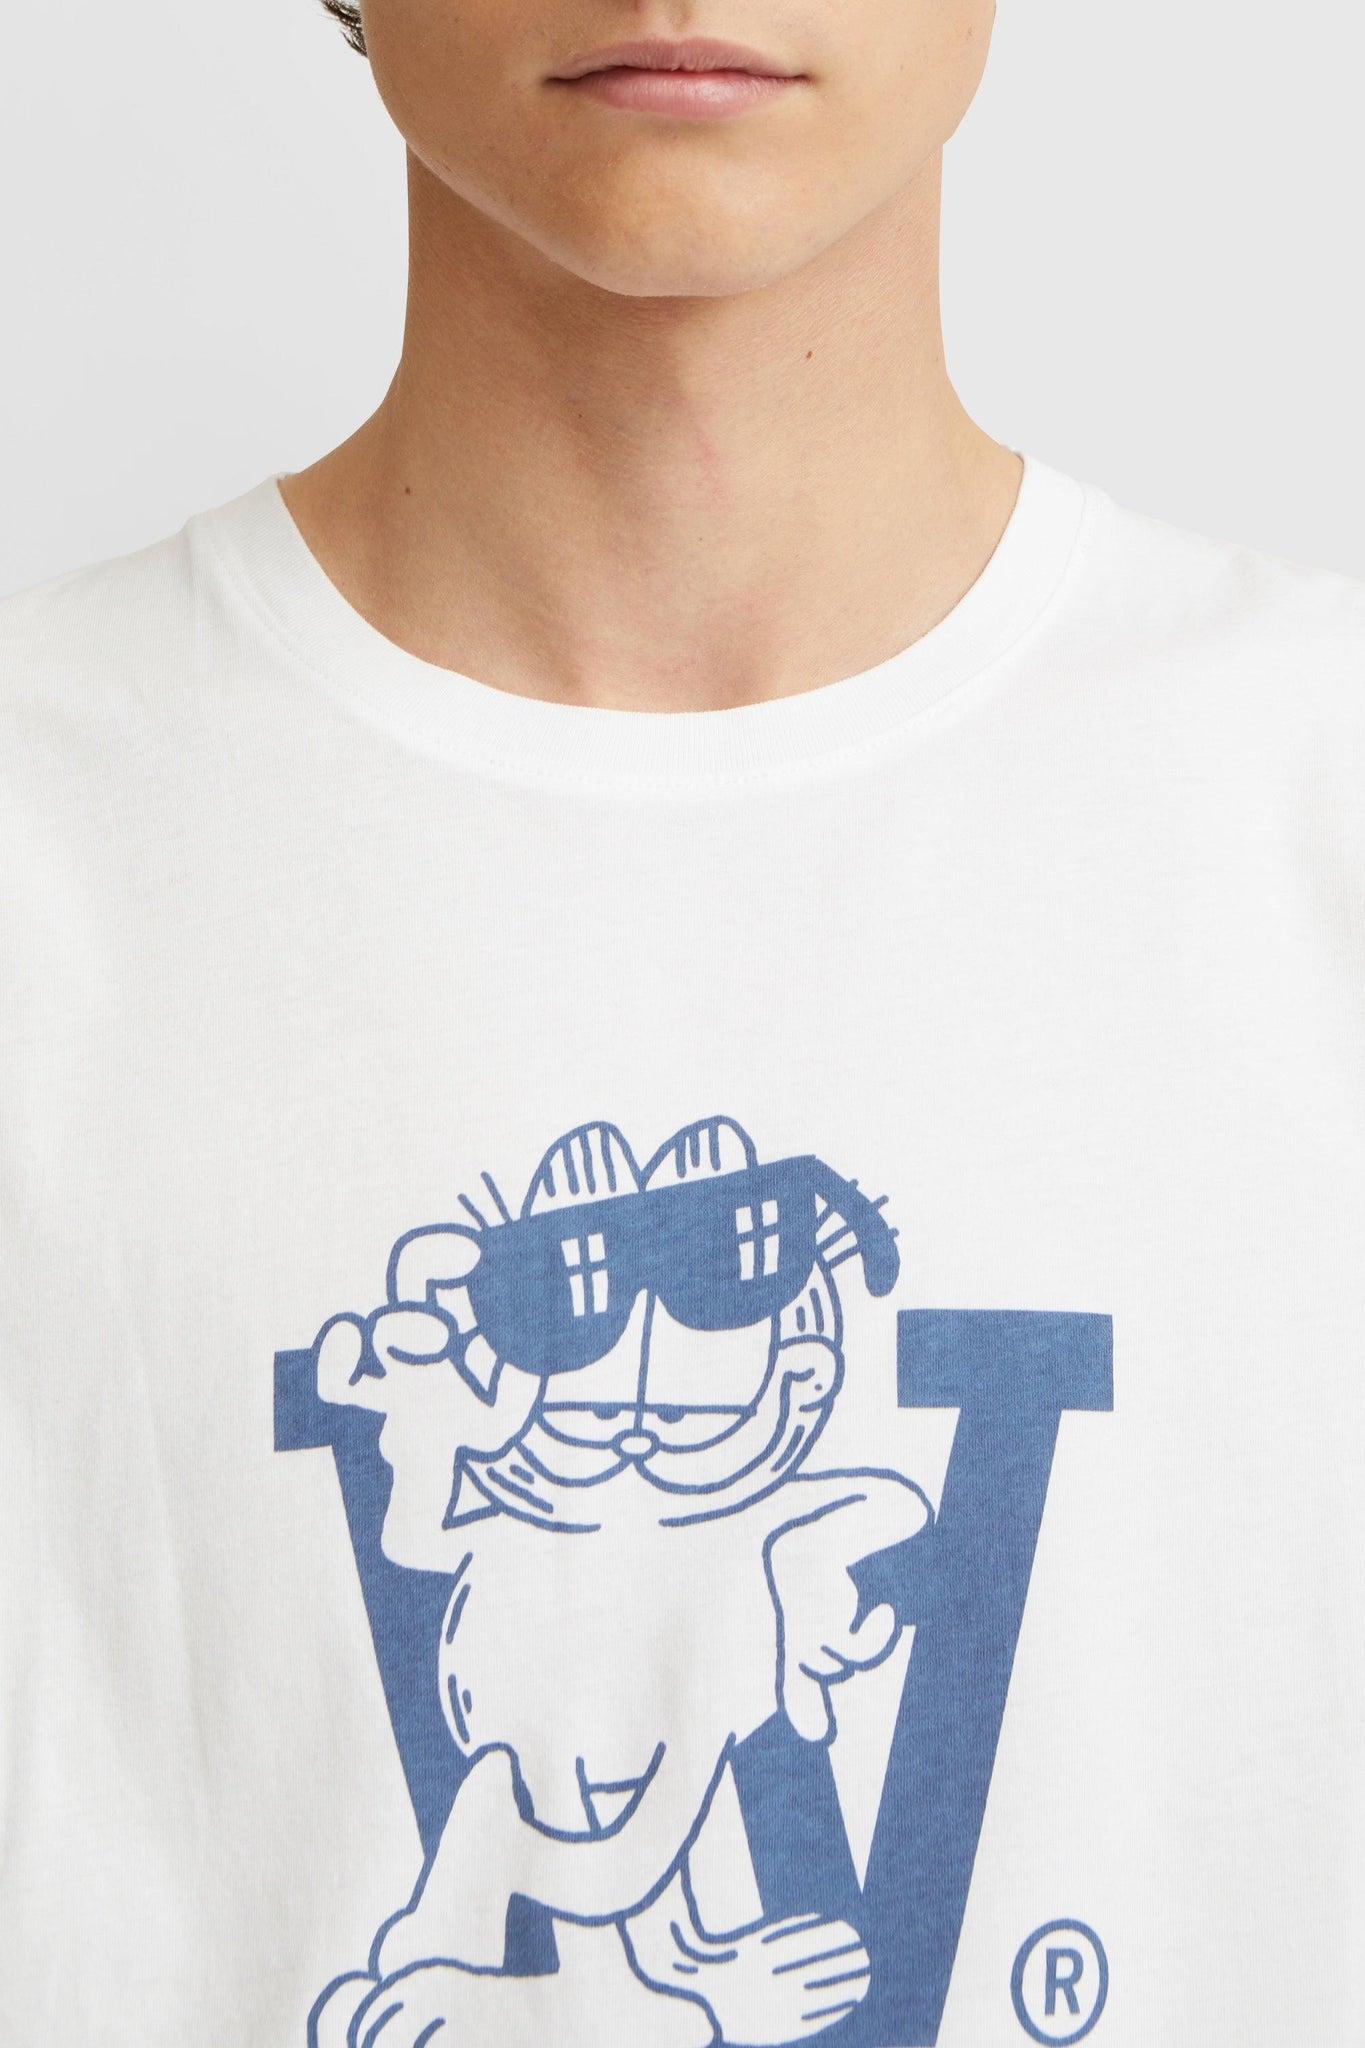 Camiseta Ace Lean Garfield by Wood Wood - ECRU